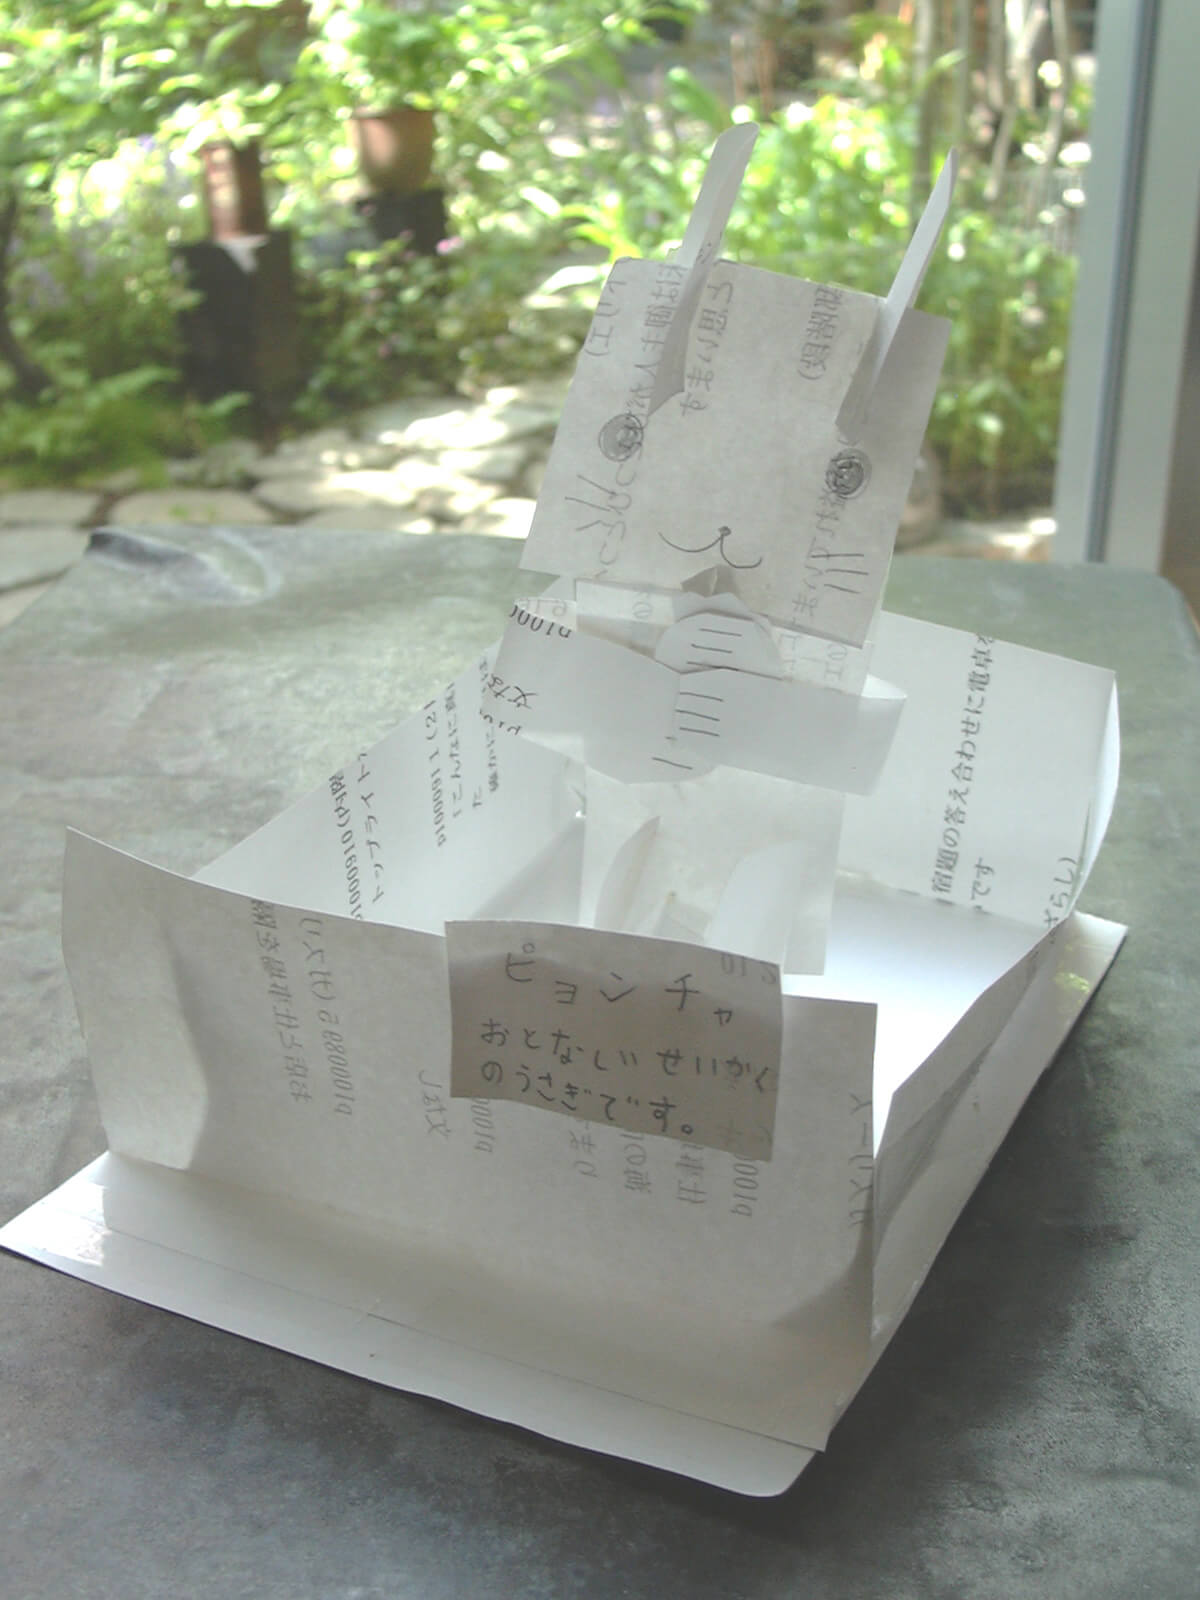 紙で立体を作るブームがきた子供が、紙でうさぎを作りました